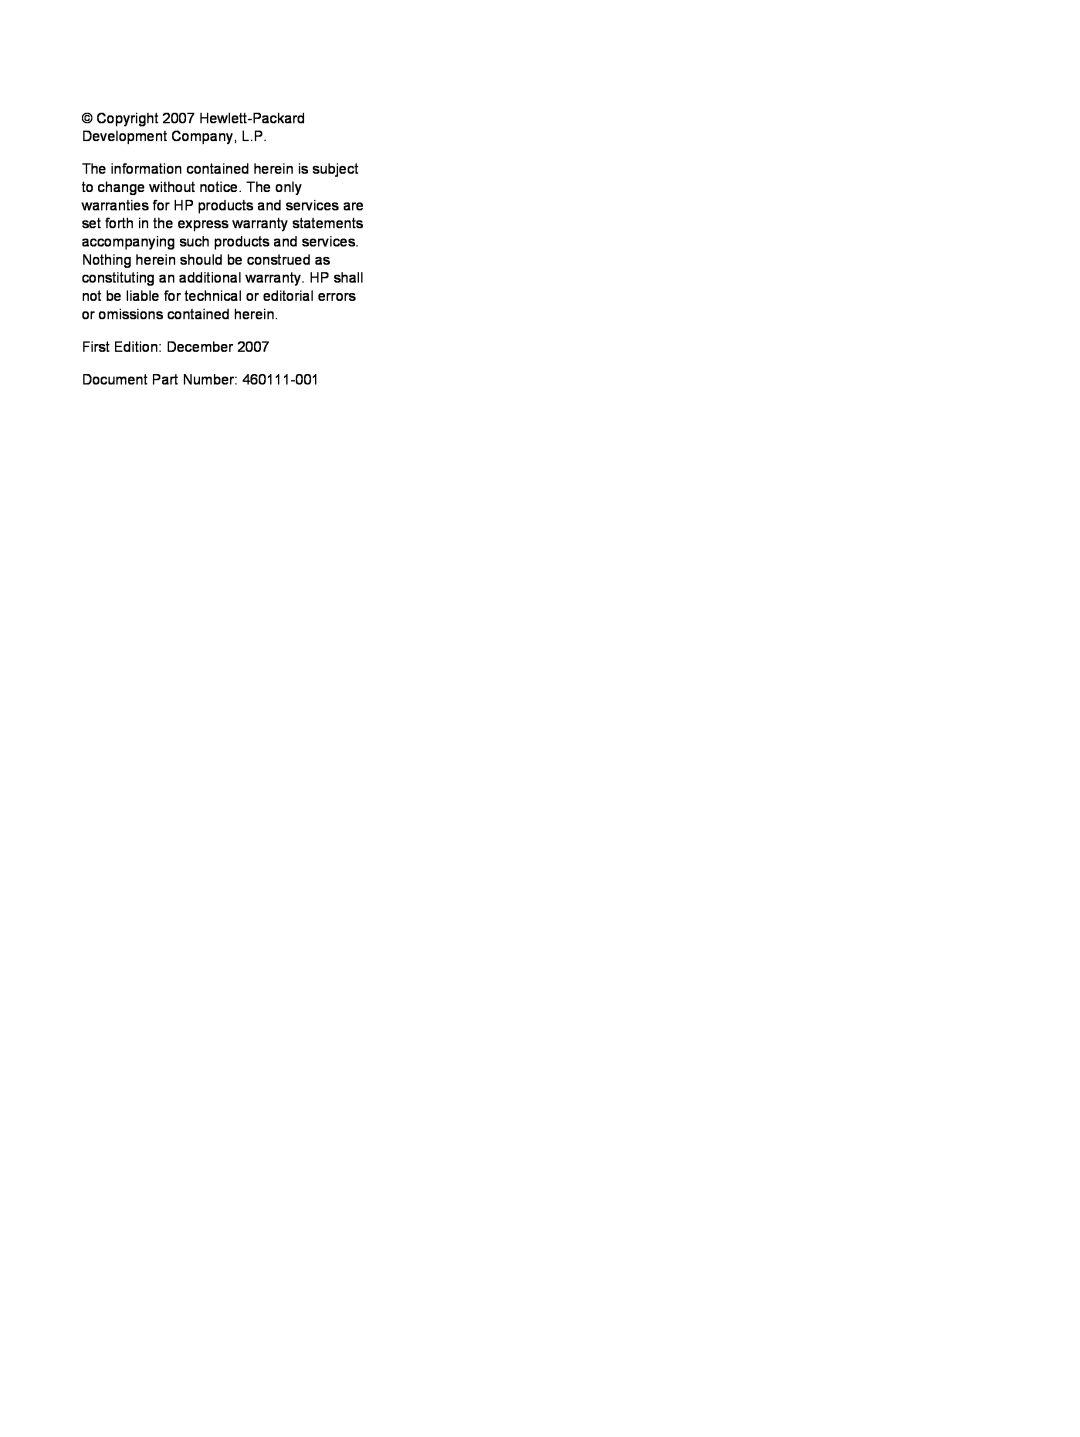 HP A928CA, A930XX Copyright 2007 Hewlett-Packard Development Company, L.P, First Edition December Document Part Number 